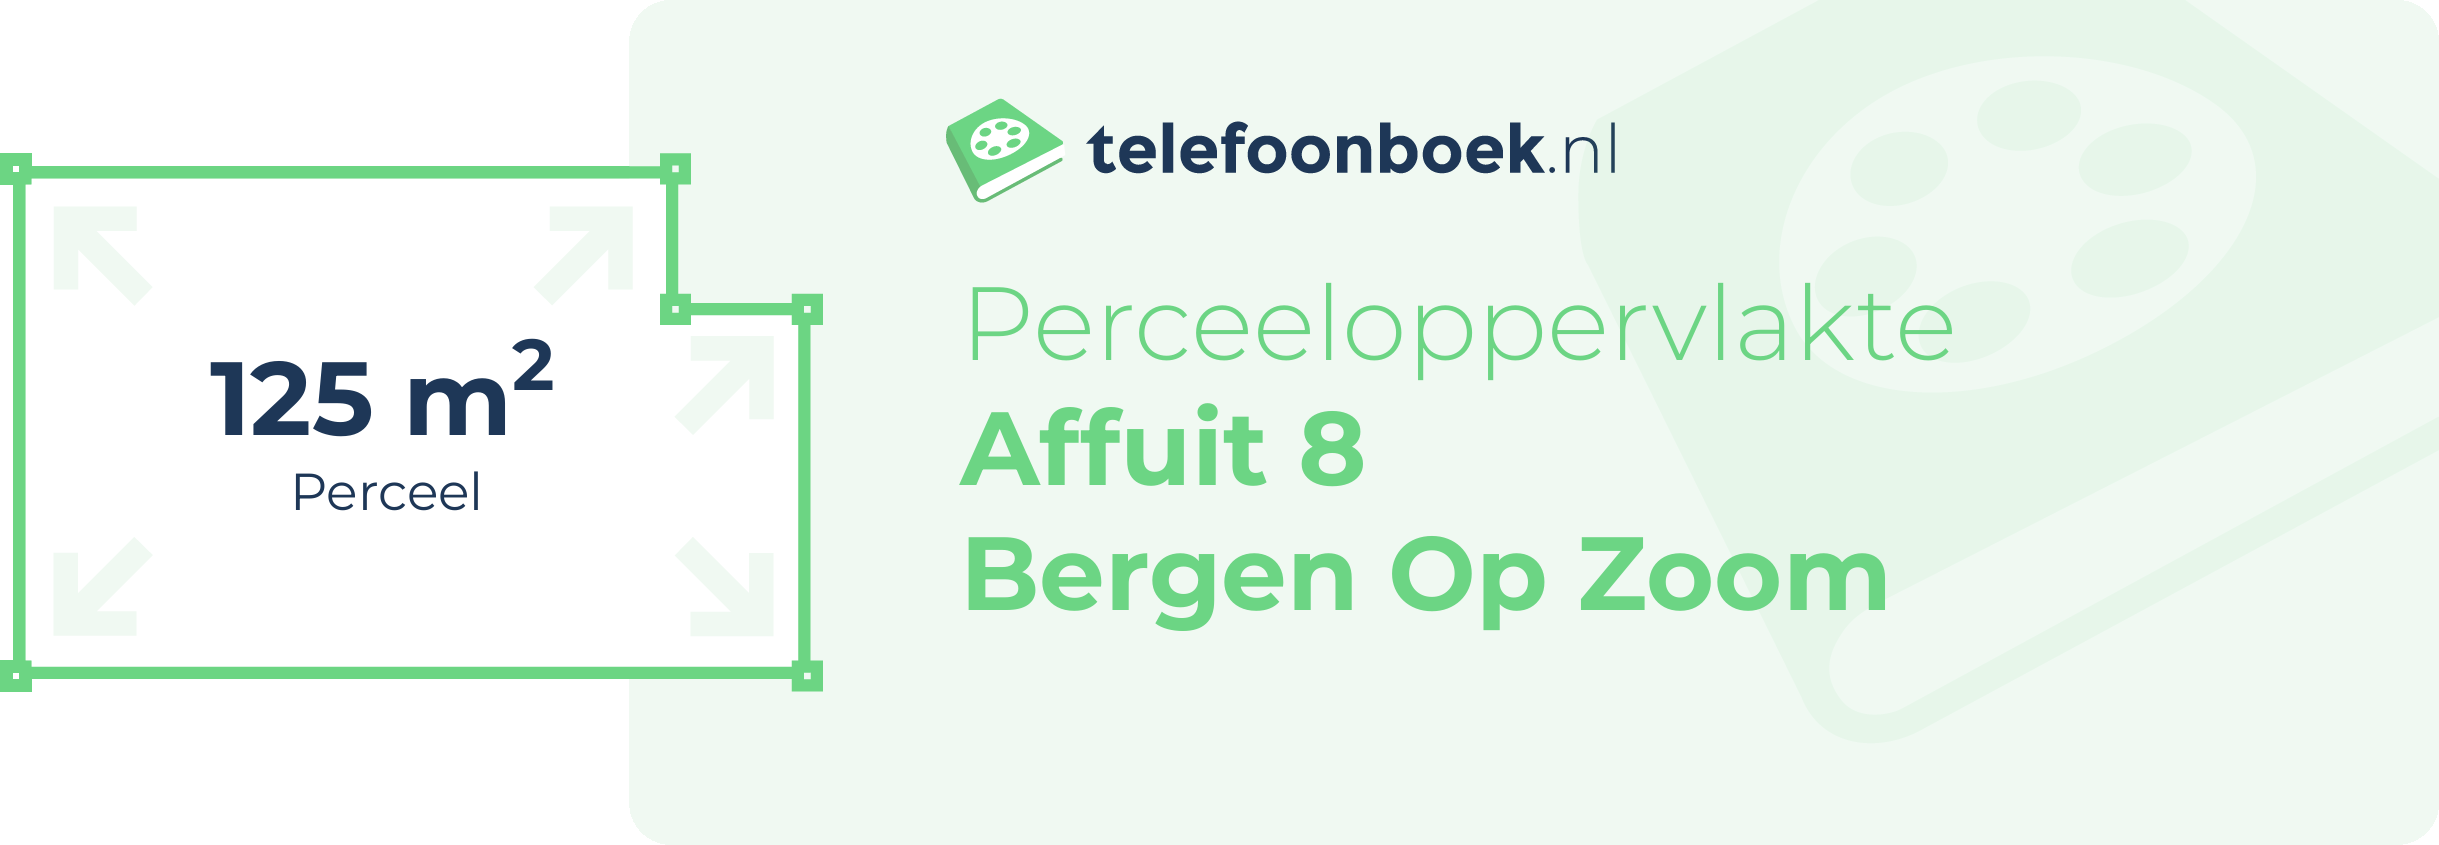 Perceeloppervlakte Affuit 8 Bergen Op Zoom